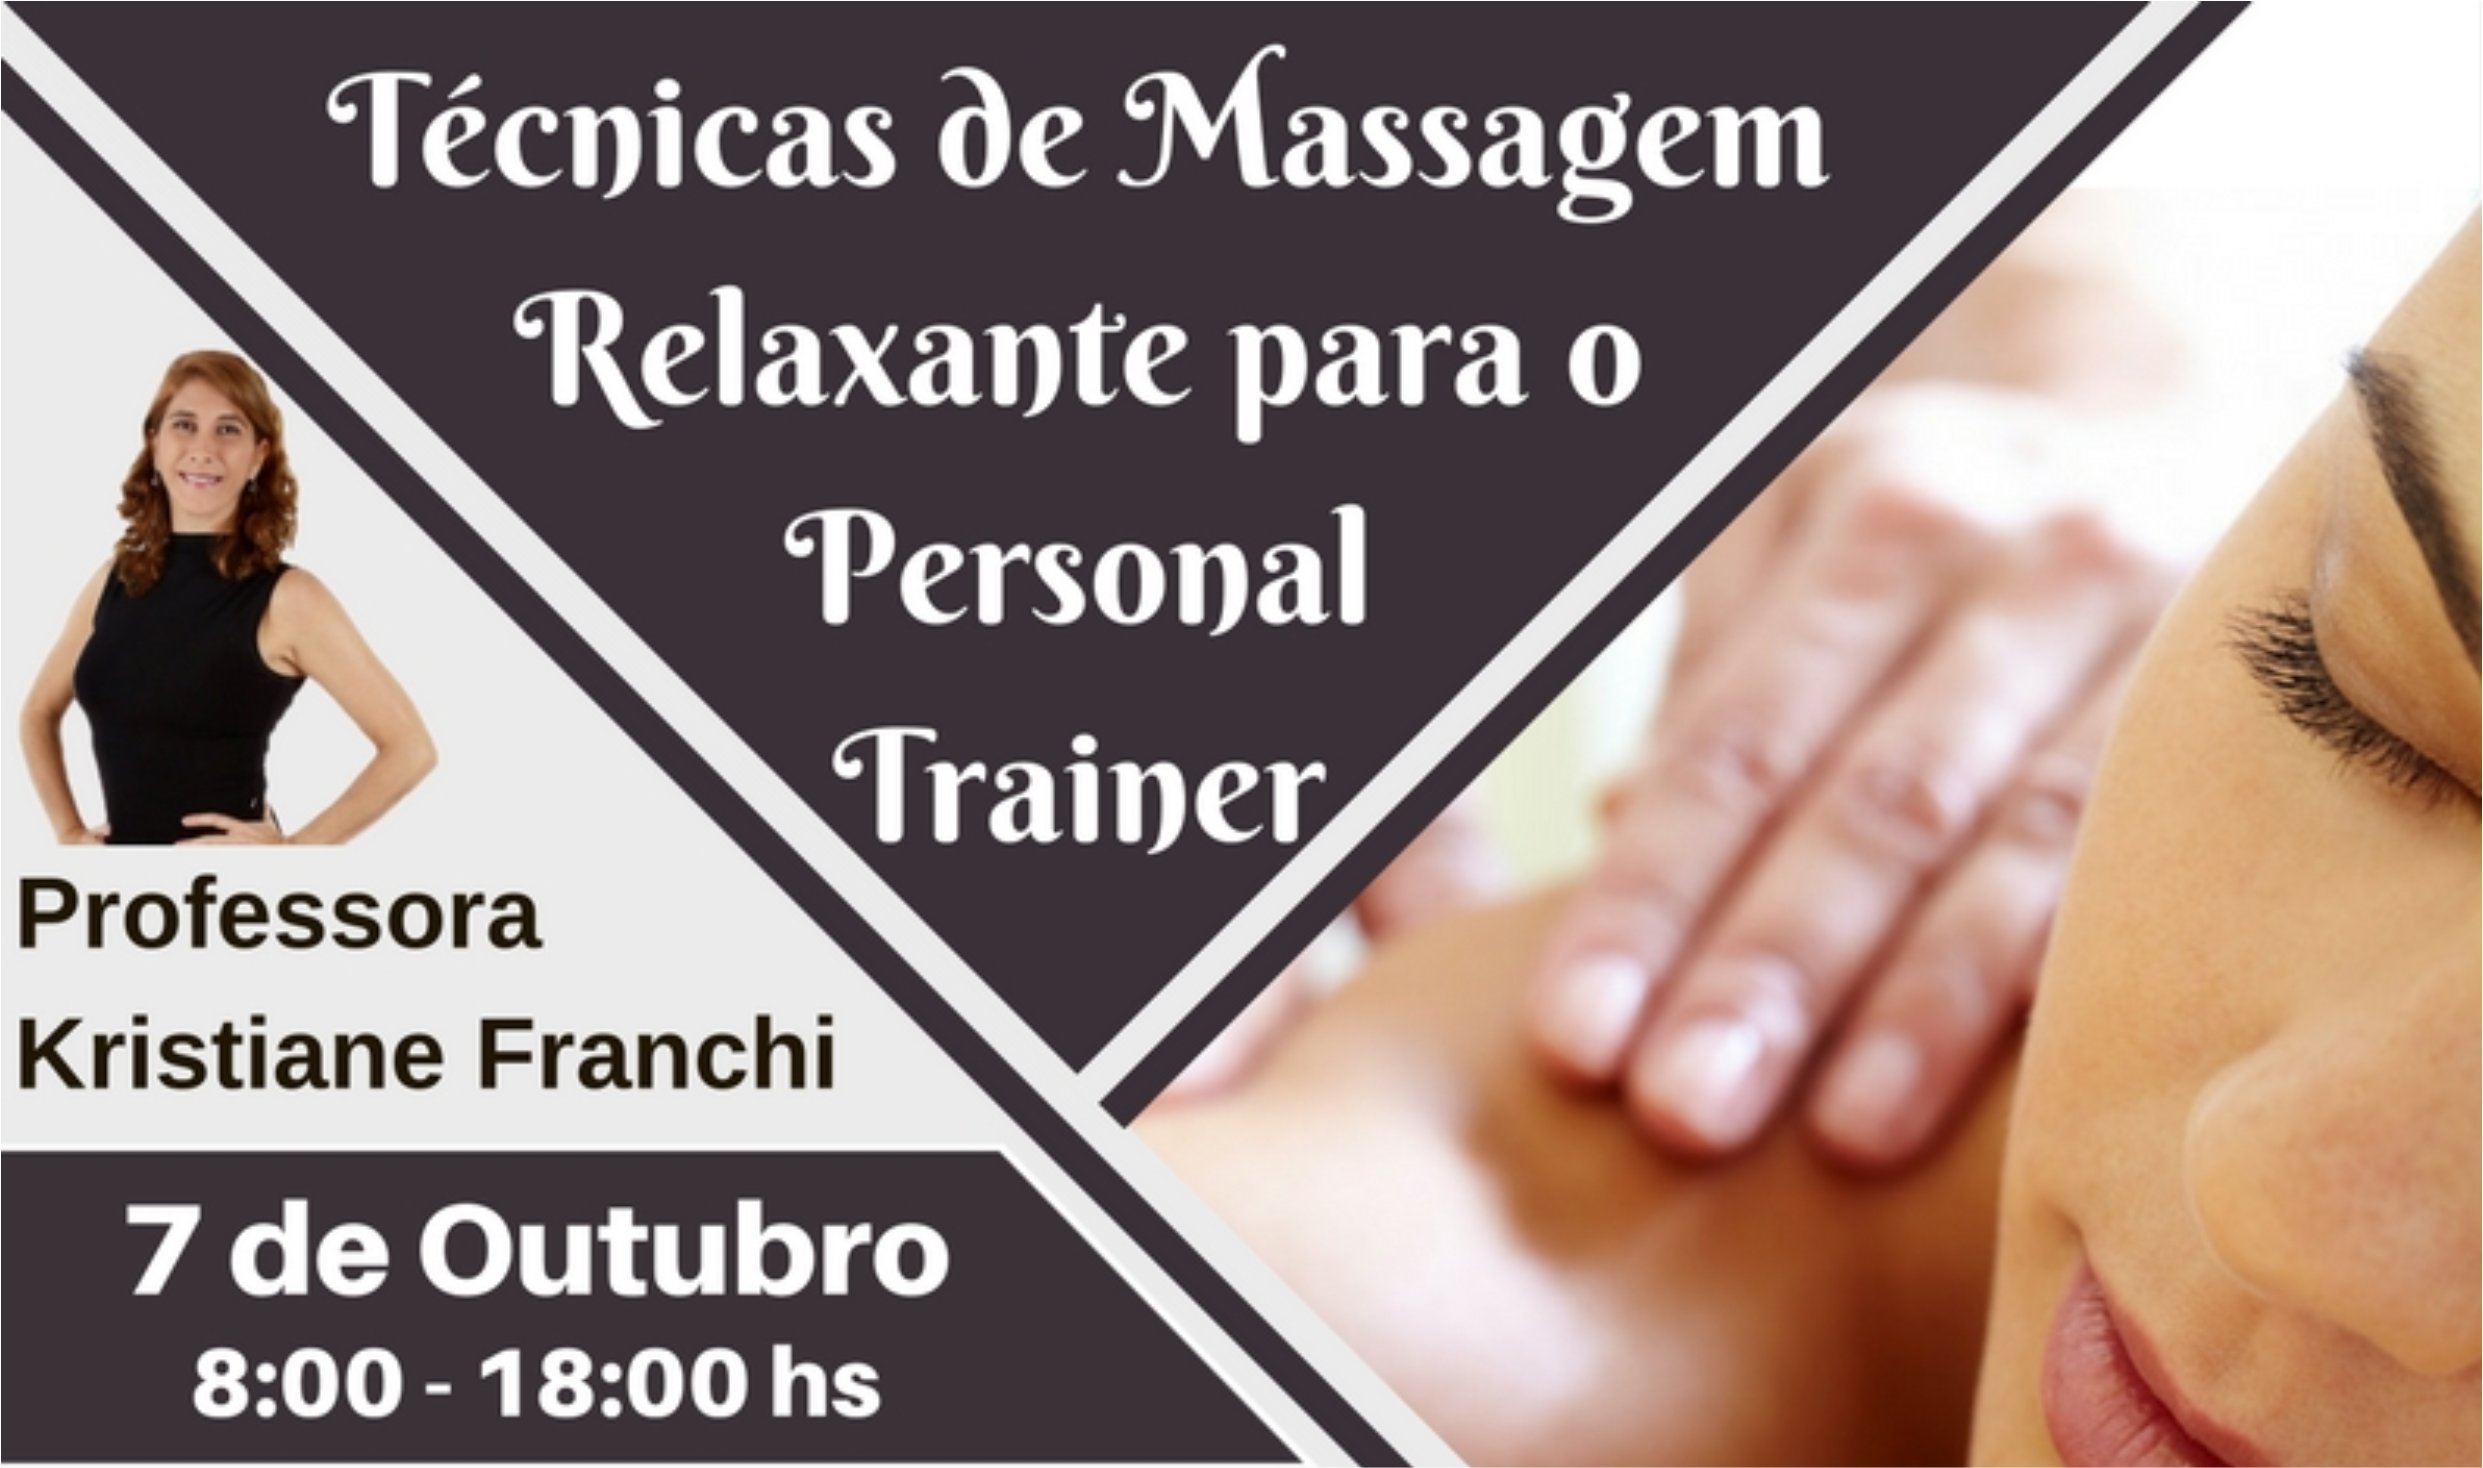 Curso de Técnicas de Massagem Relaxante para o Personal Trainer